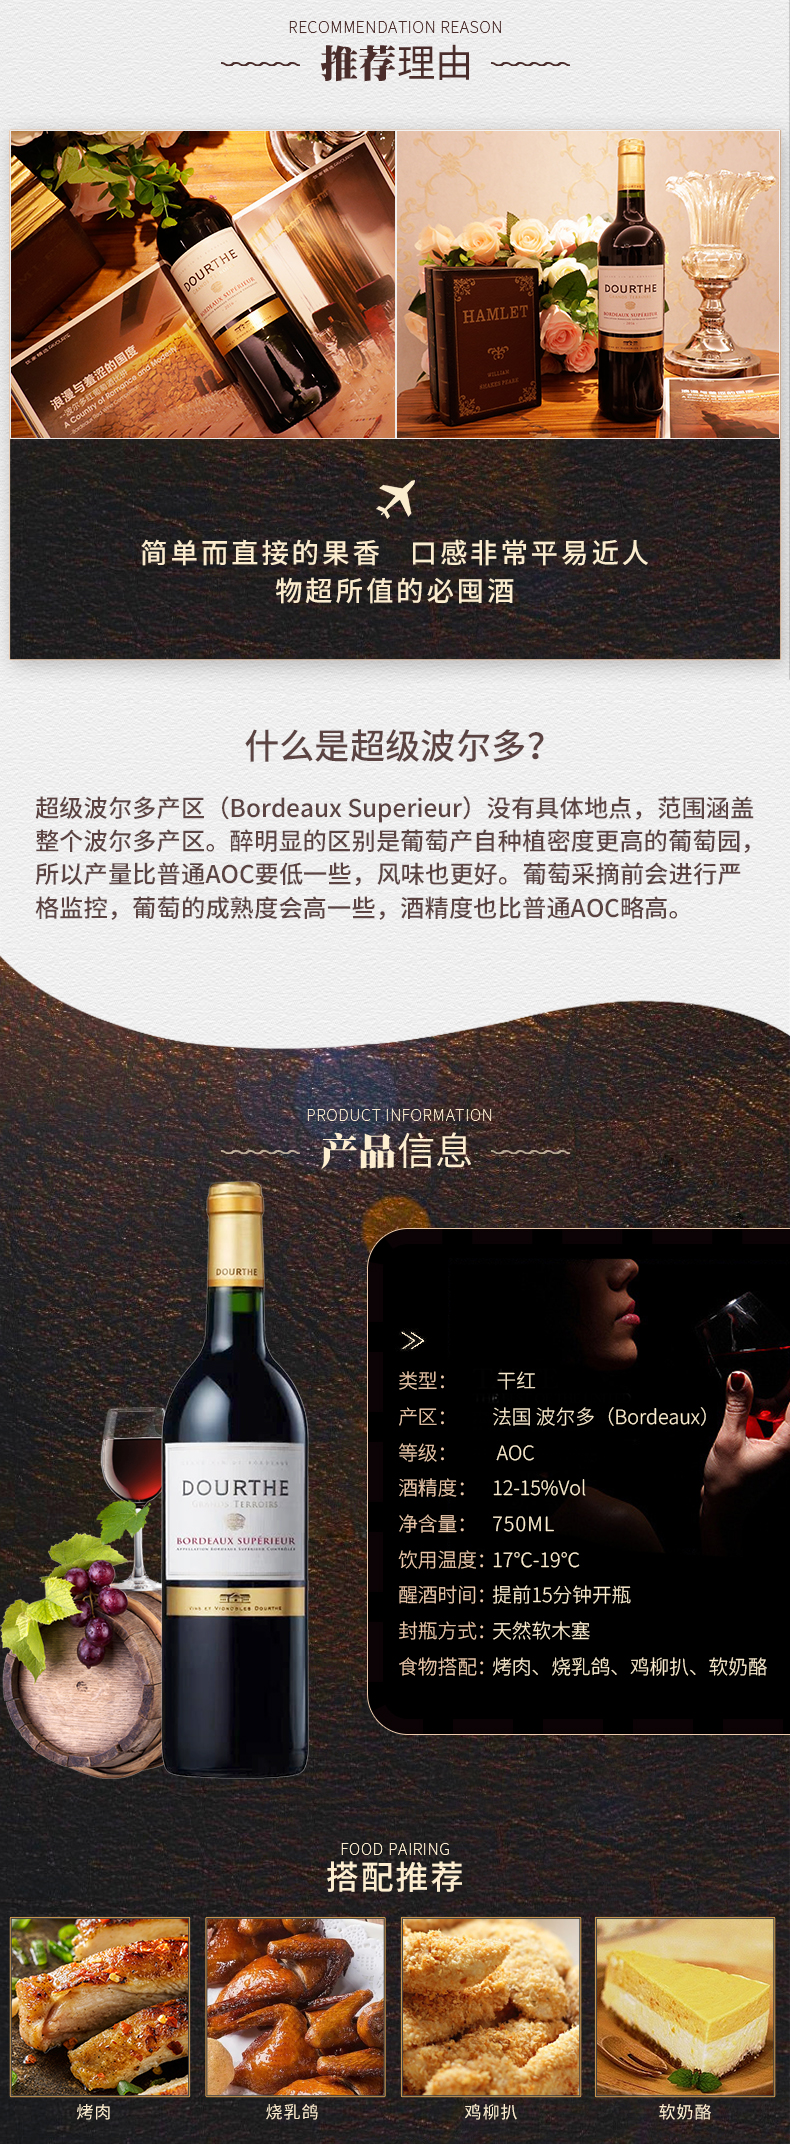 A-杜夫超級波爾多紅葡萄酒-J_02.jpg